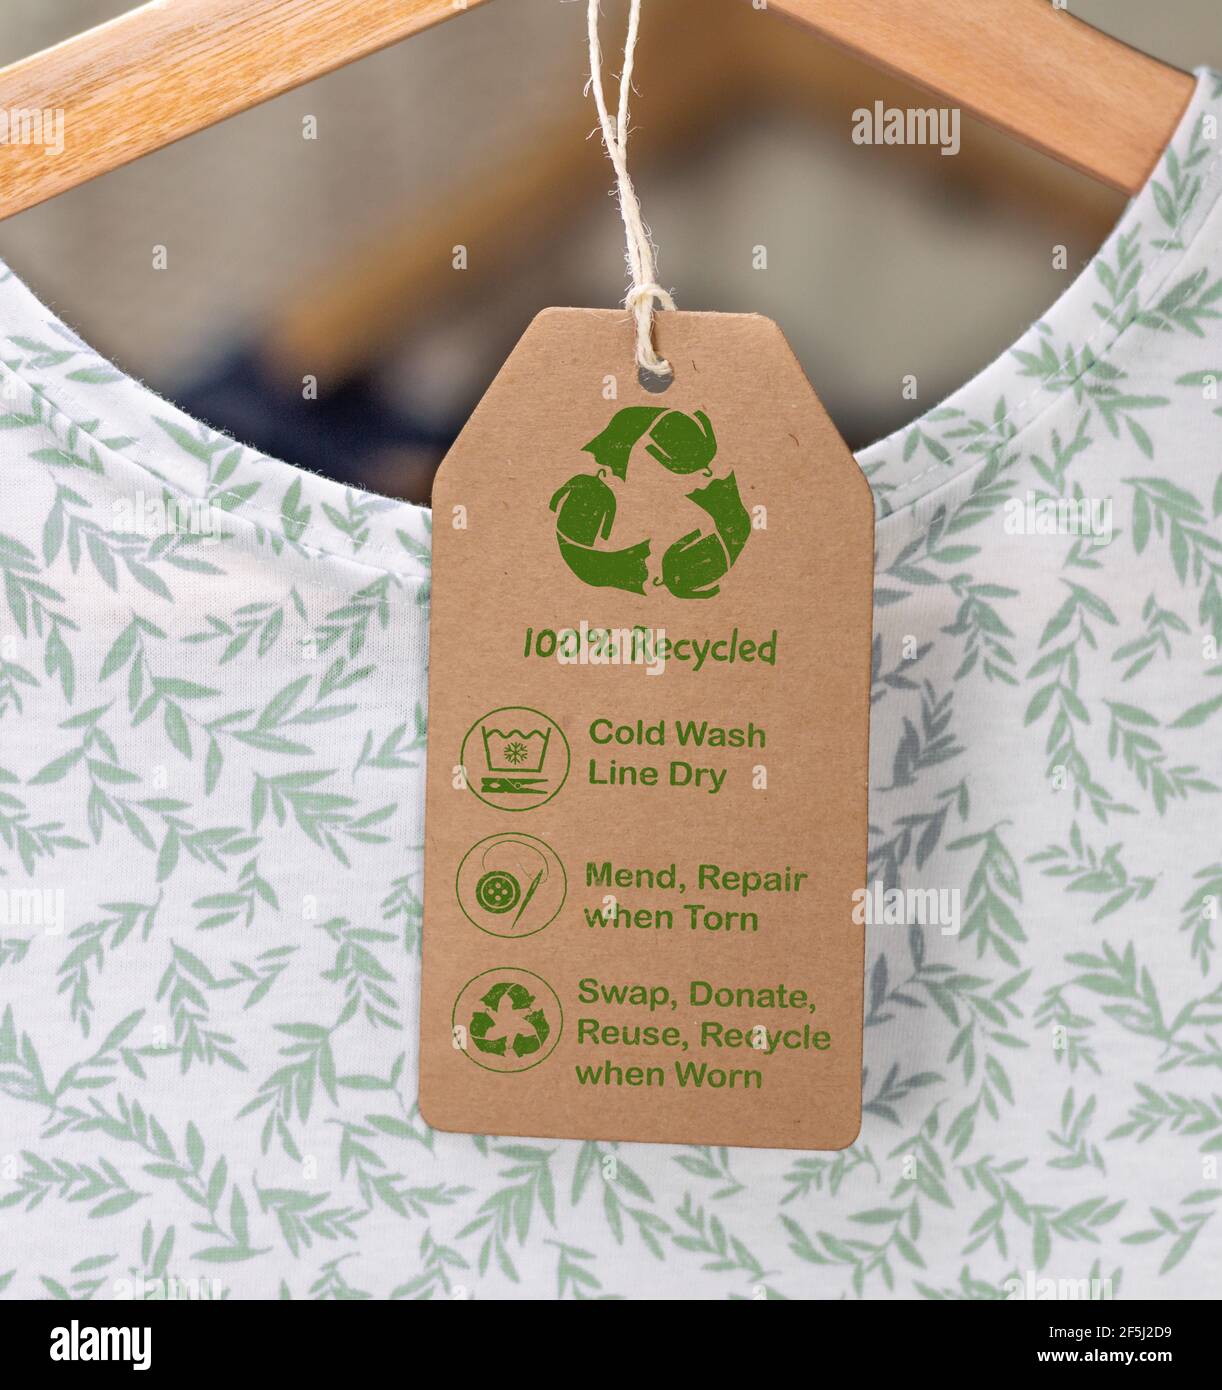 Recycling-Pflegeetikett auf T-Shirt, nachhaltige Mode kalt waschen, Linie trocken, reparieren und reparieren, wiederverwenden, tauschen oder spenden mit Symbolen. Stockfoto